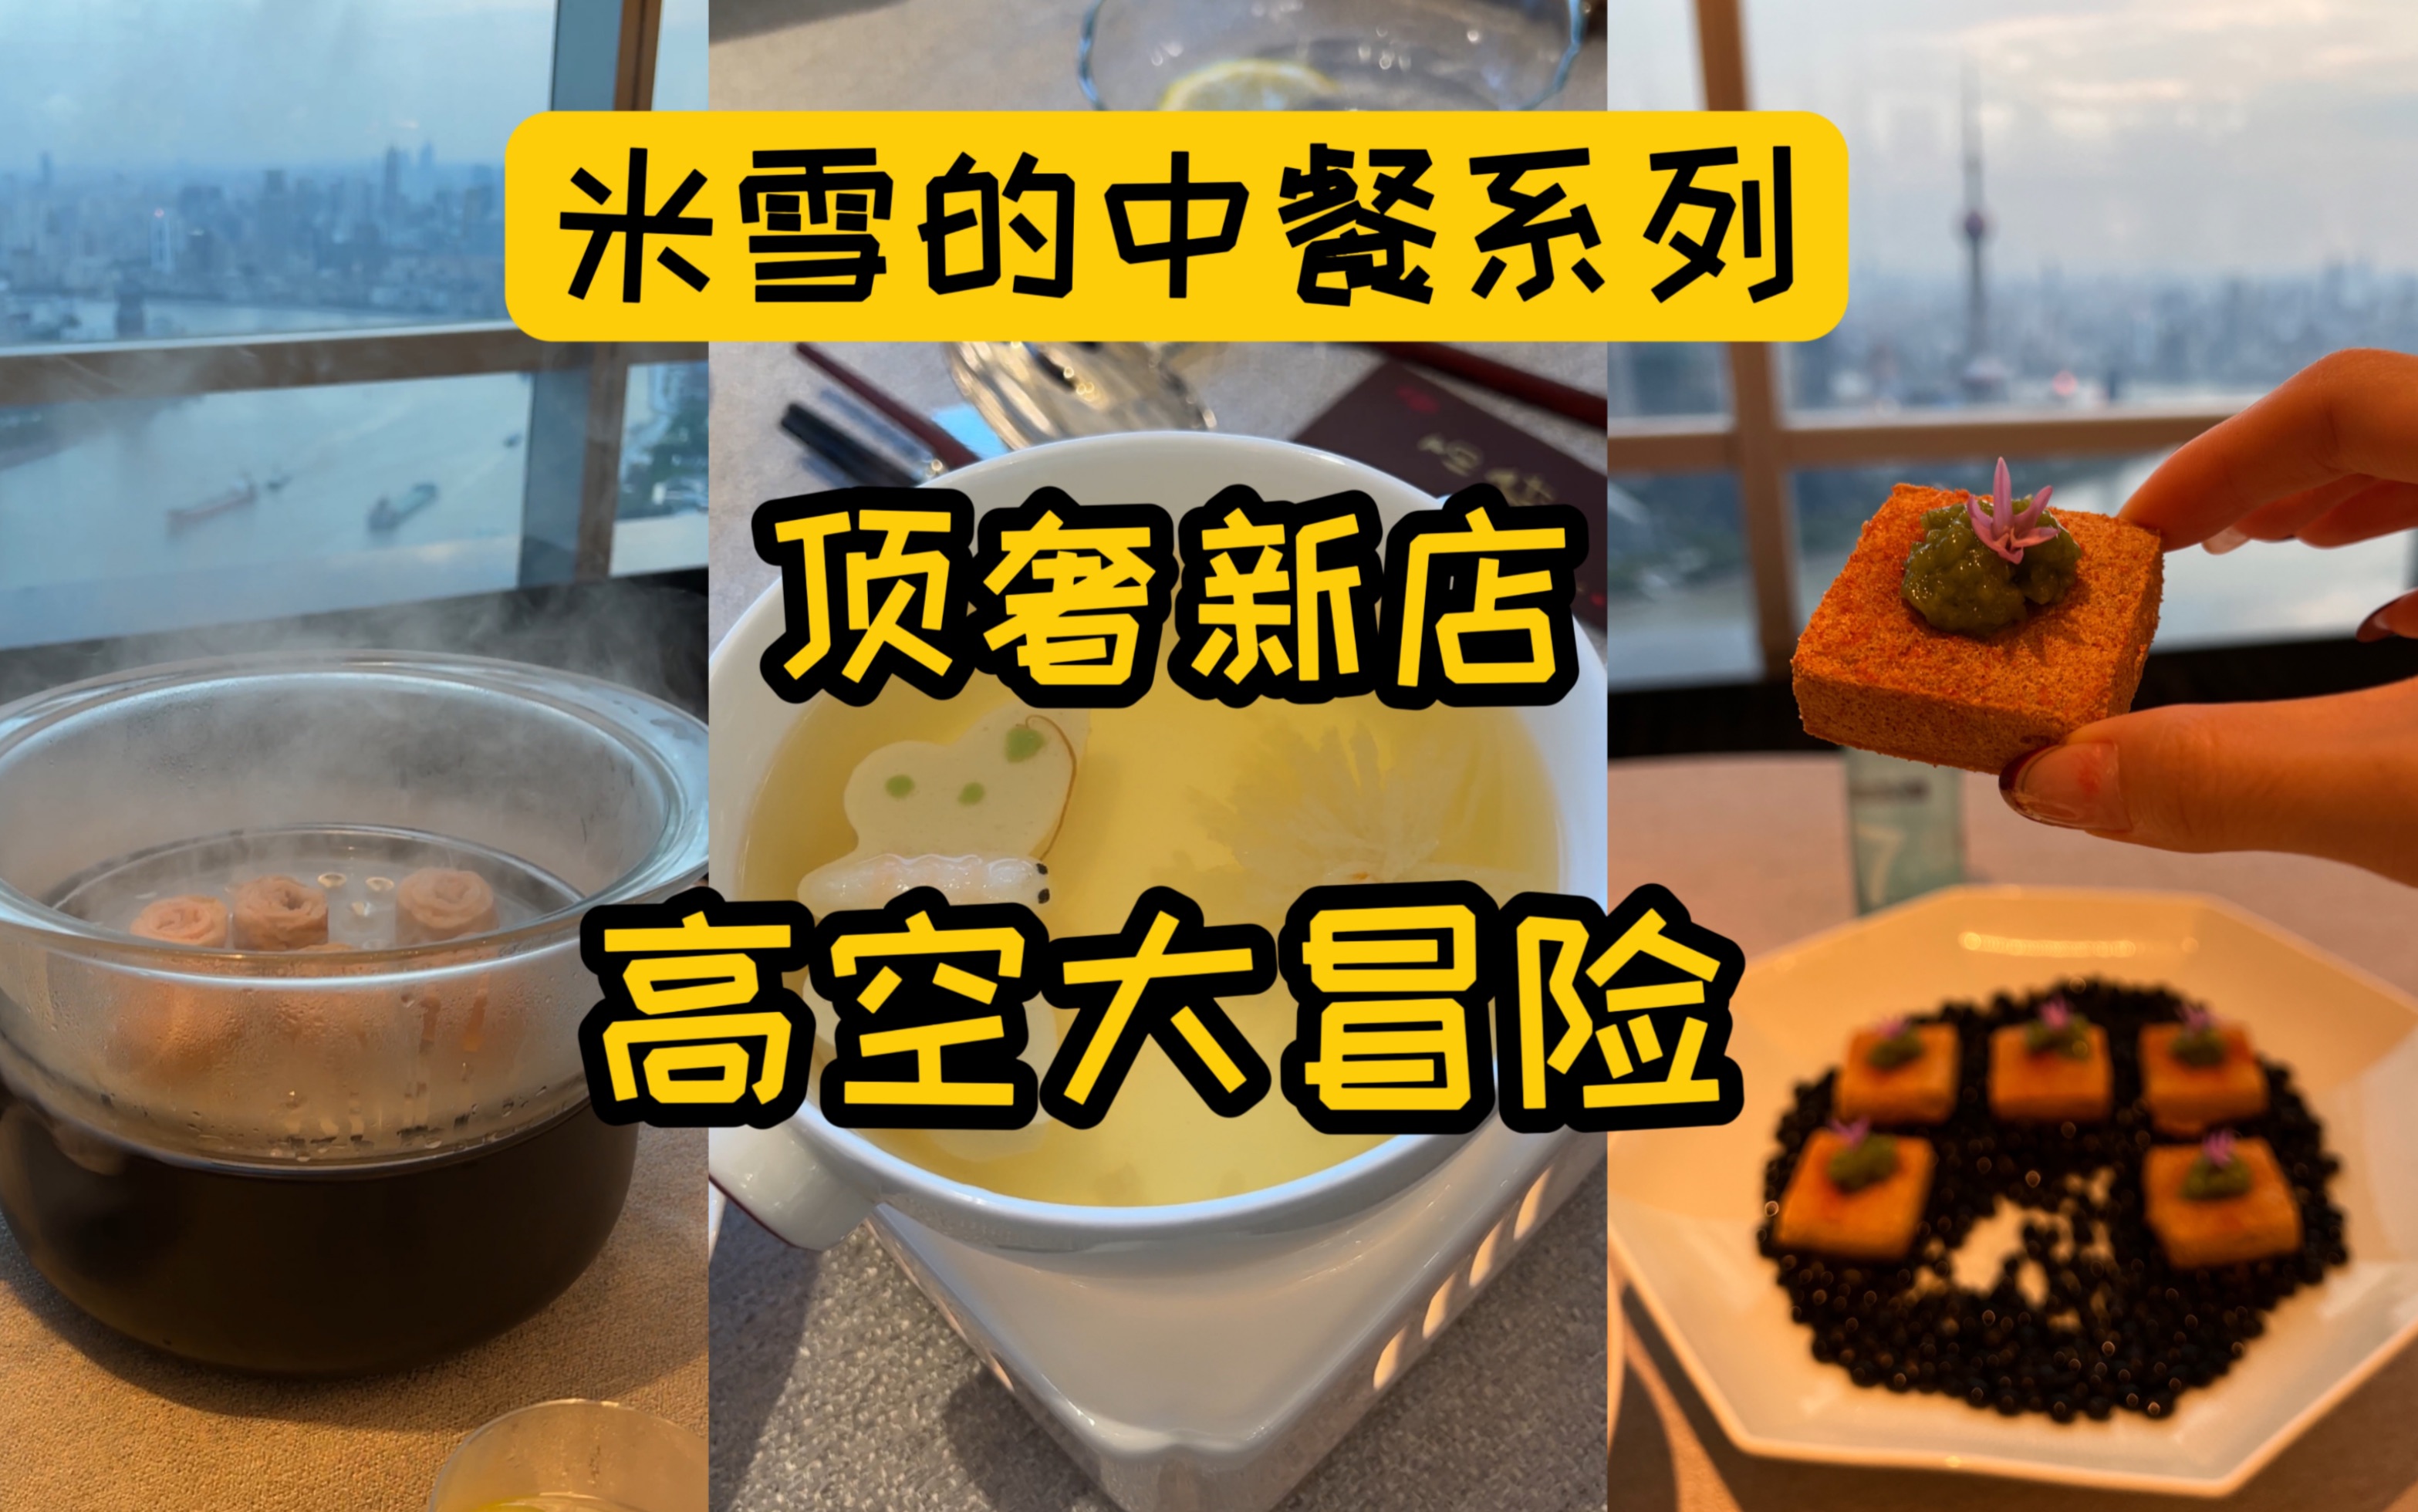 在上海高空，200元6段大肠刺身，400元6块臭豆腐臭豆腐。江景有多美丽，价格就有多狰狞？